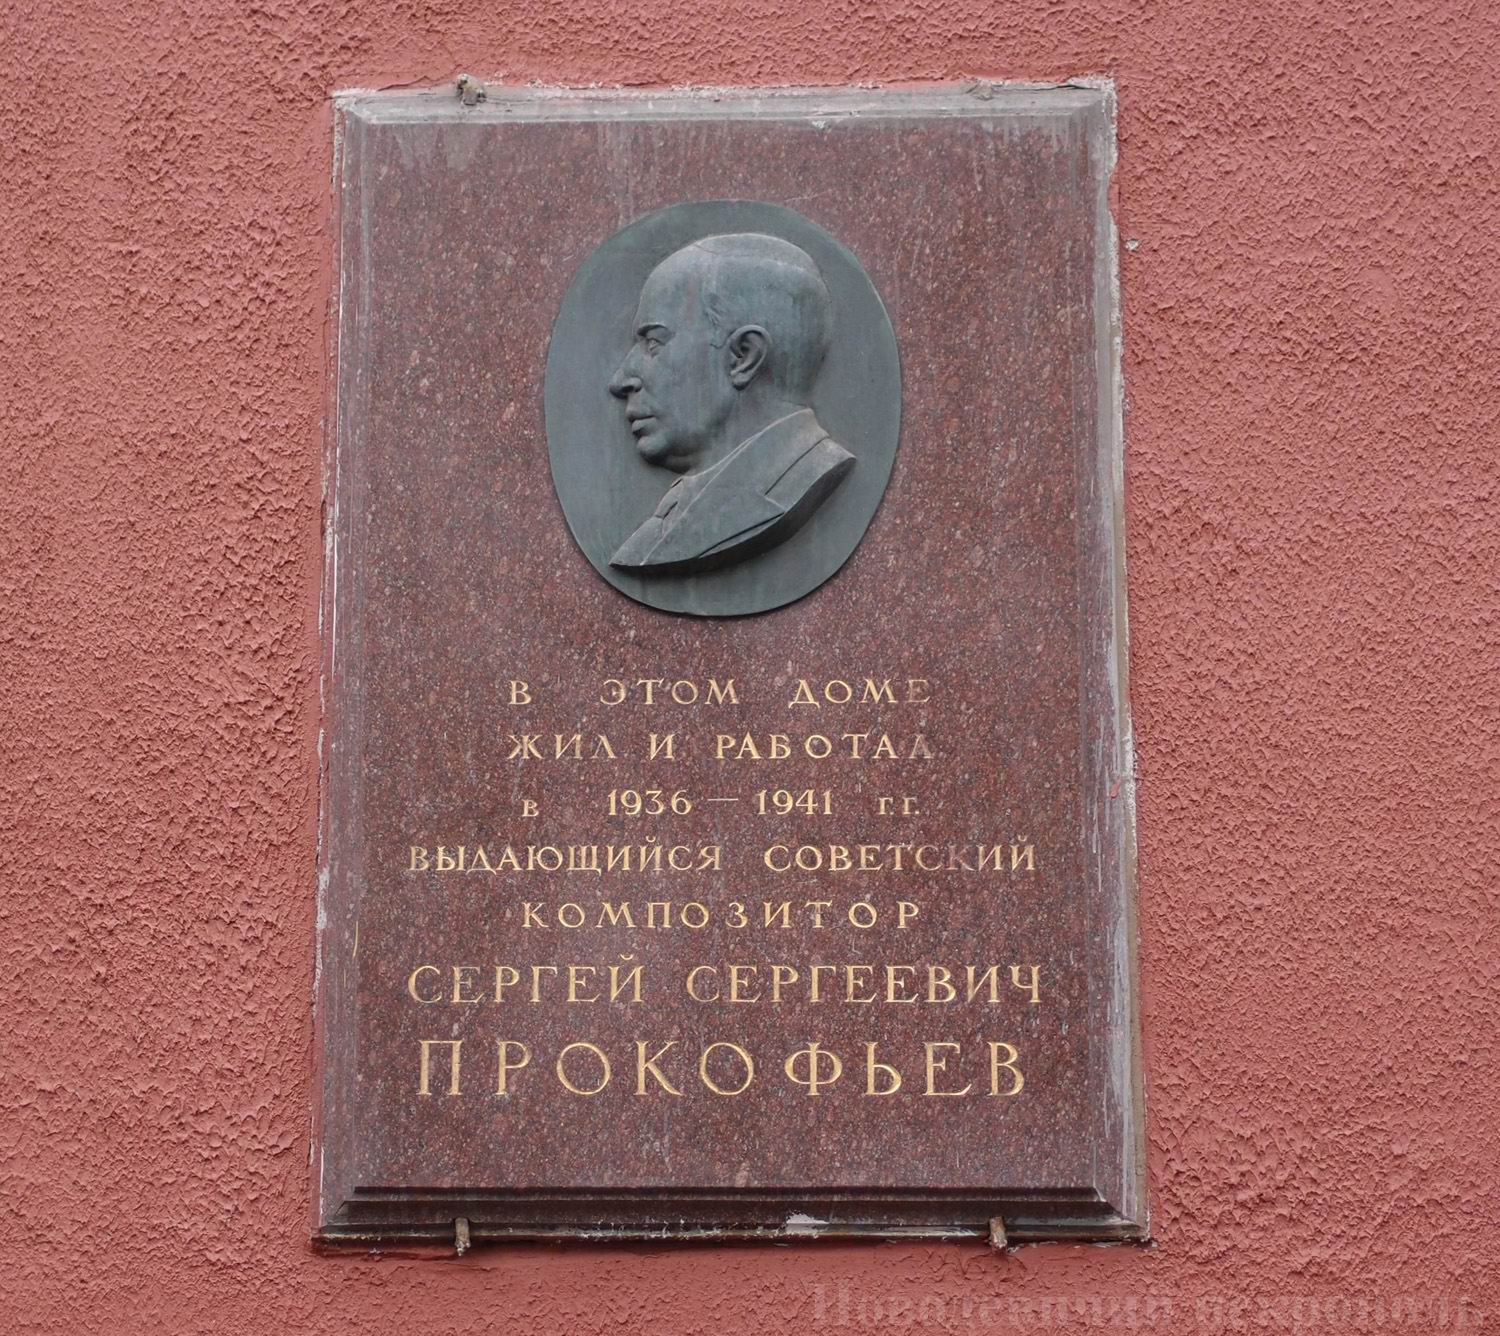 Мемориальная доска Прокофьеву С.С. (1891–1953), ск. М.Л.Петрова, на улице Земляной вал, дом 14, открыта 11.2.1958.